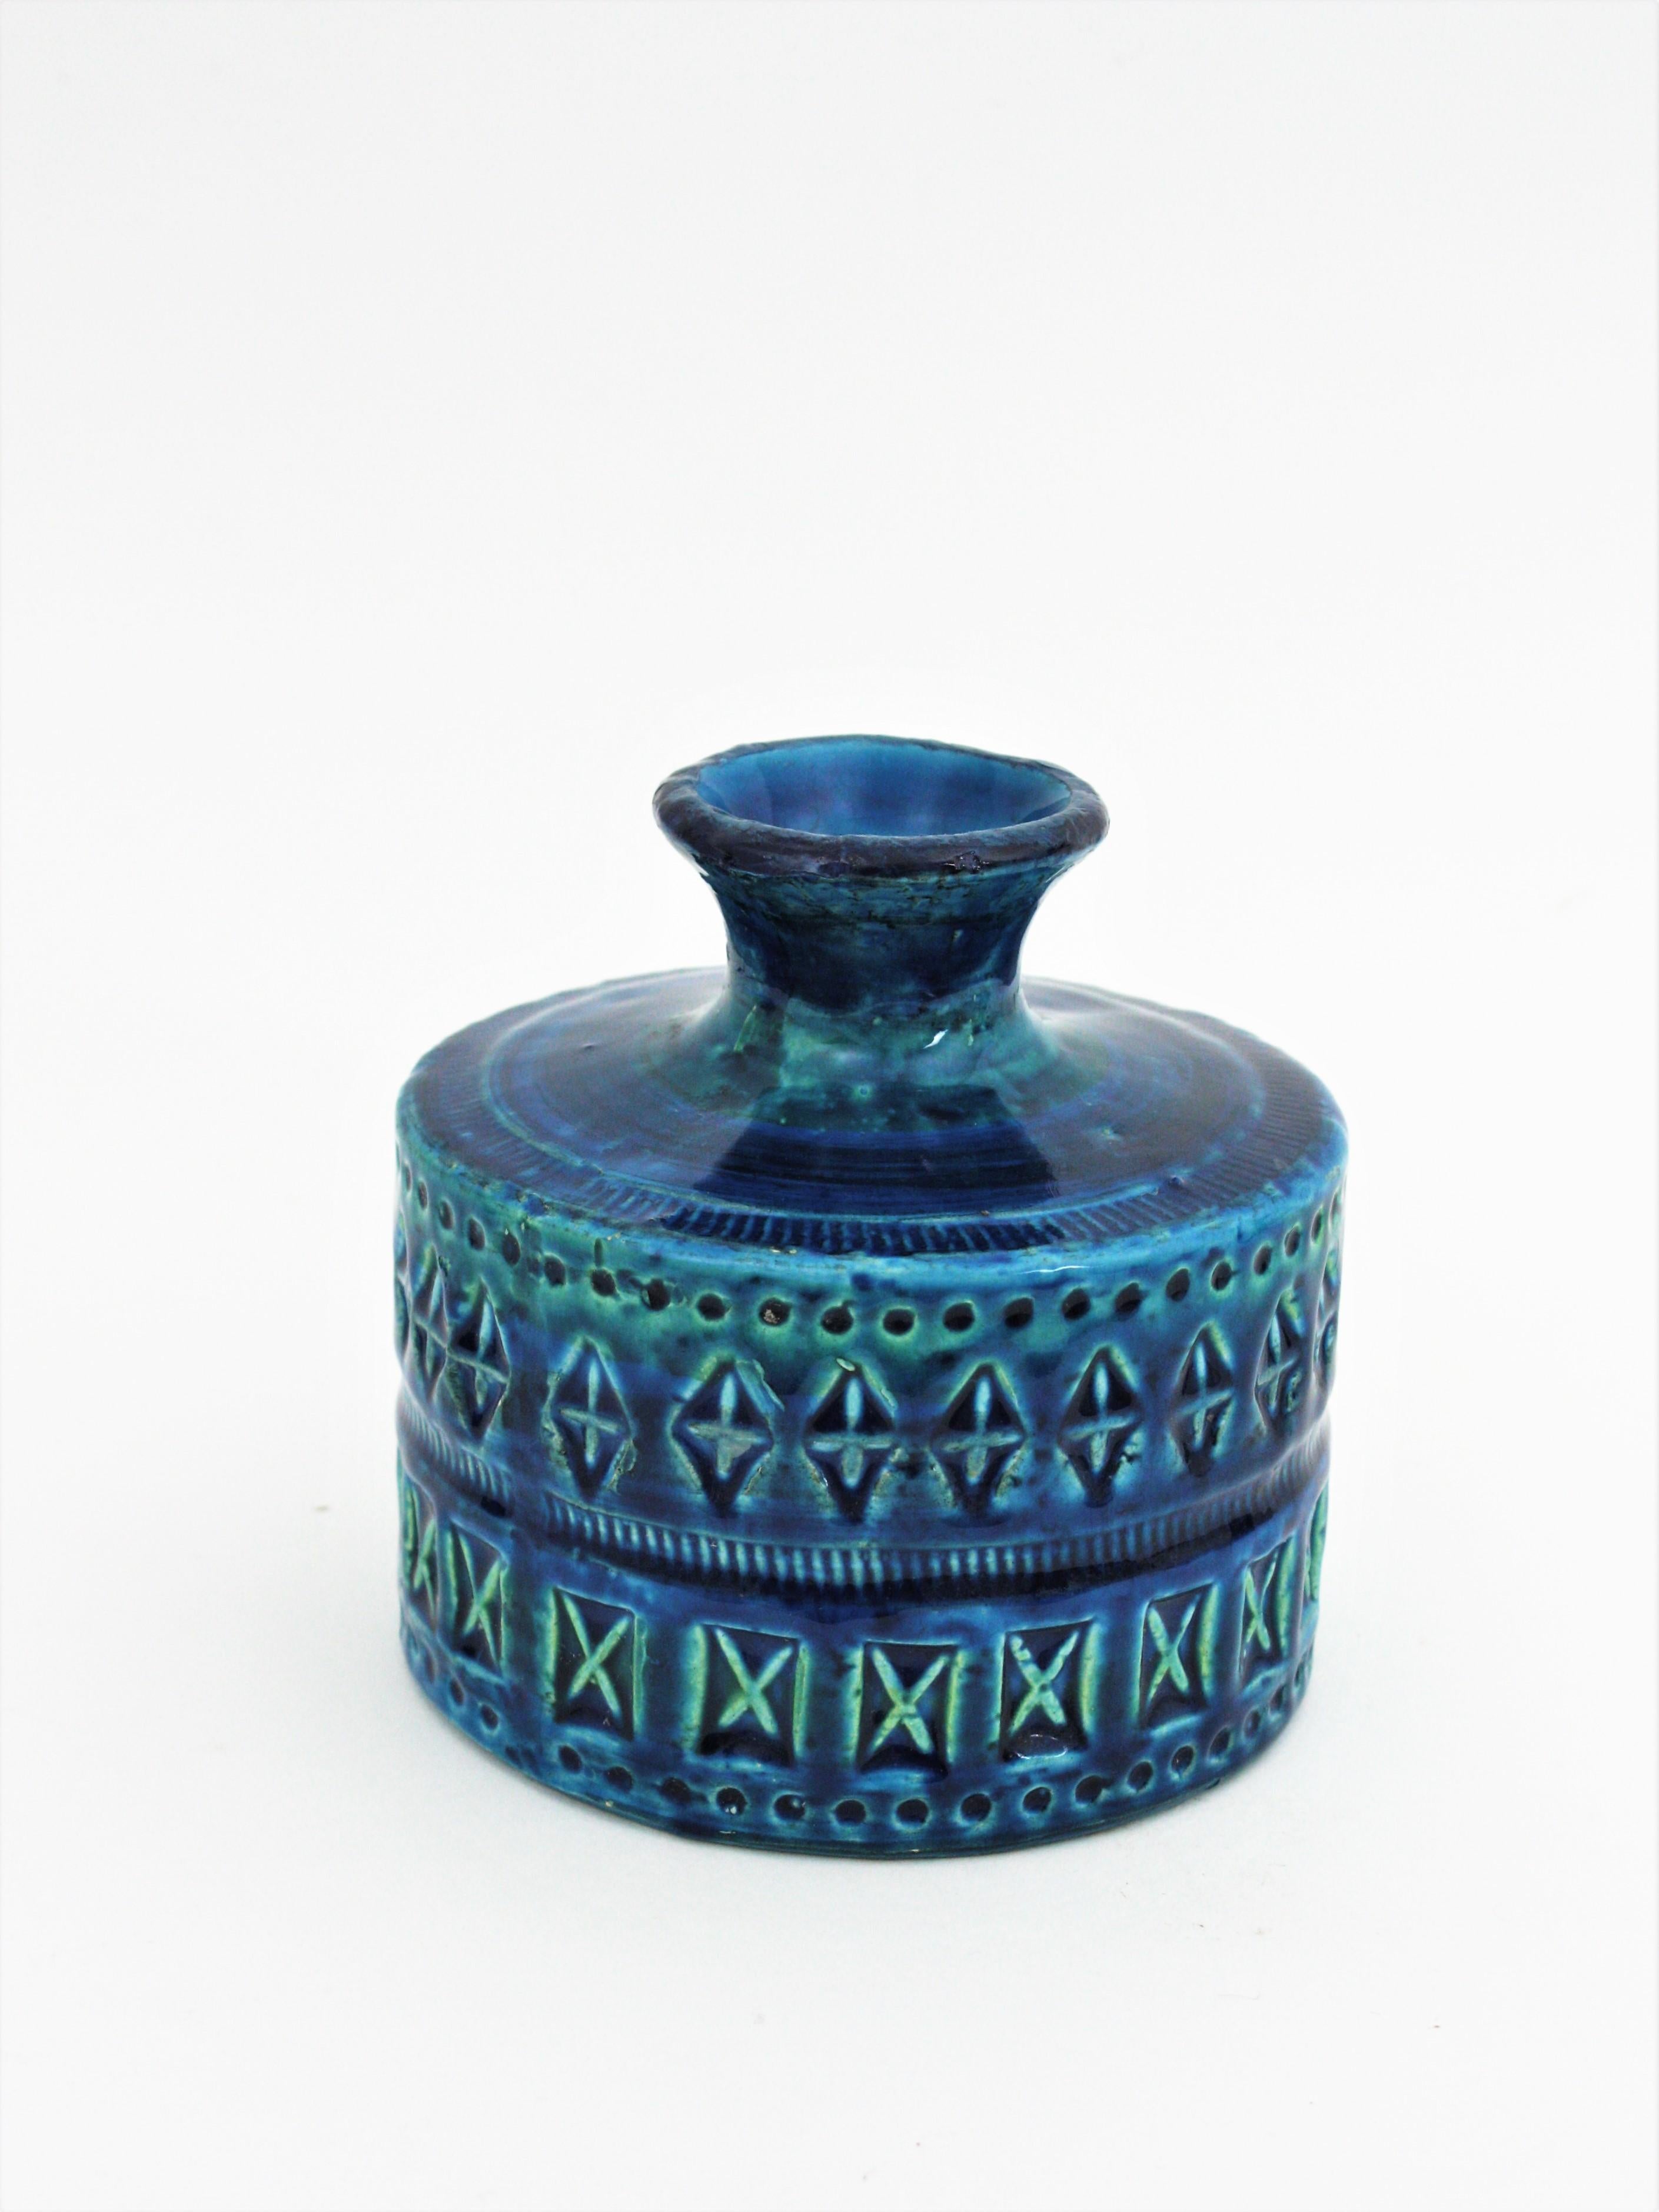 Hand-Painted Bitossi Aldo Londi Rimini Blue Ceramic Set of Vase, Ashtray and Candleholder For Sale